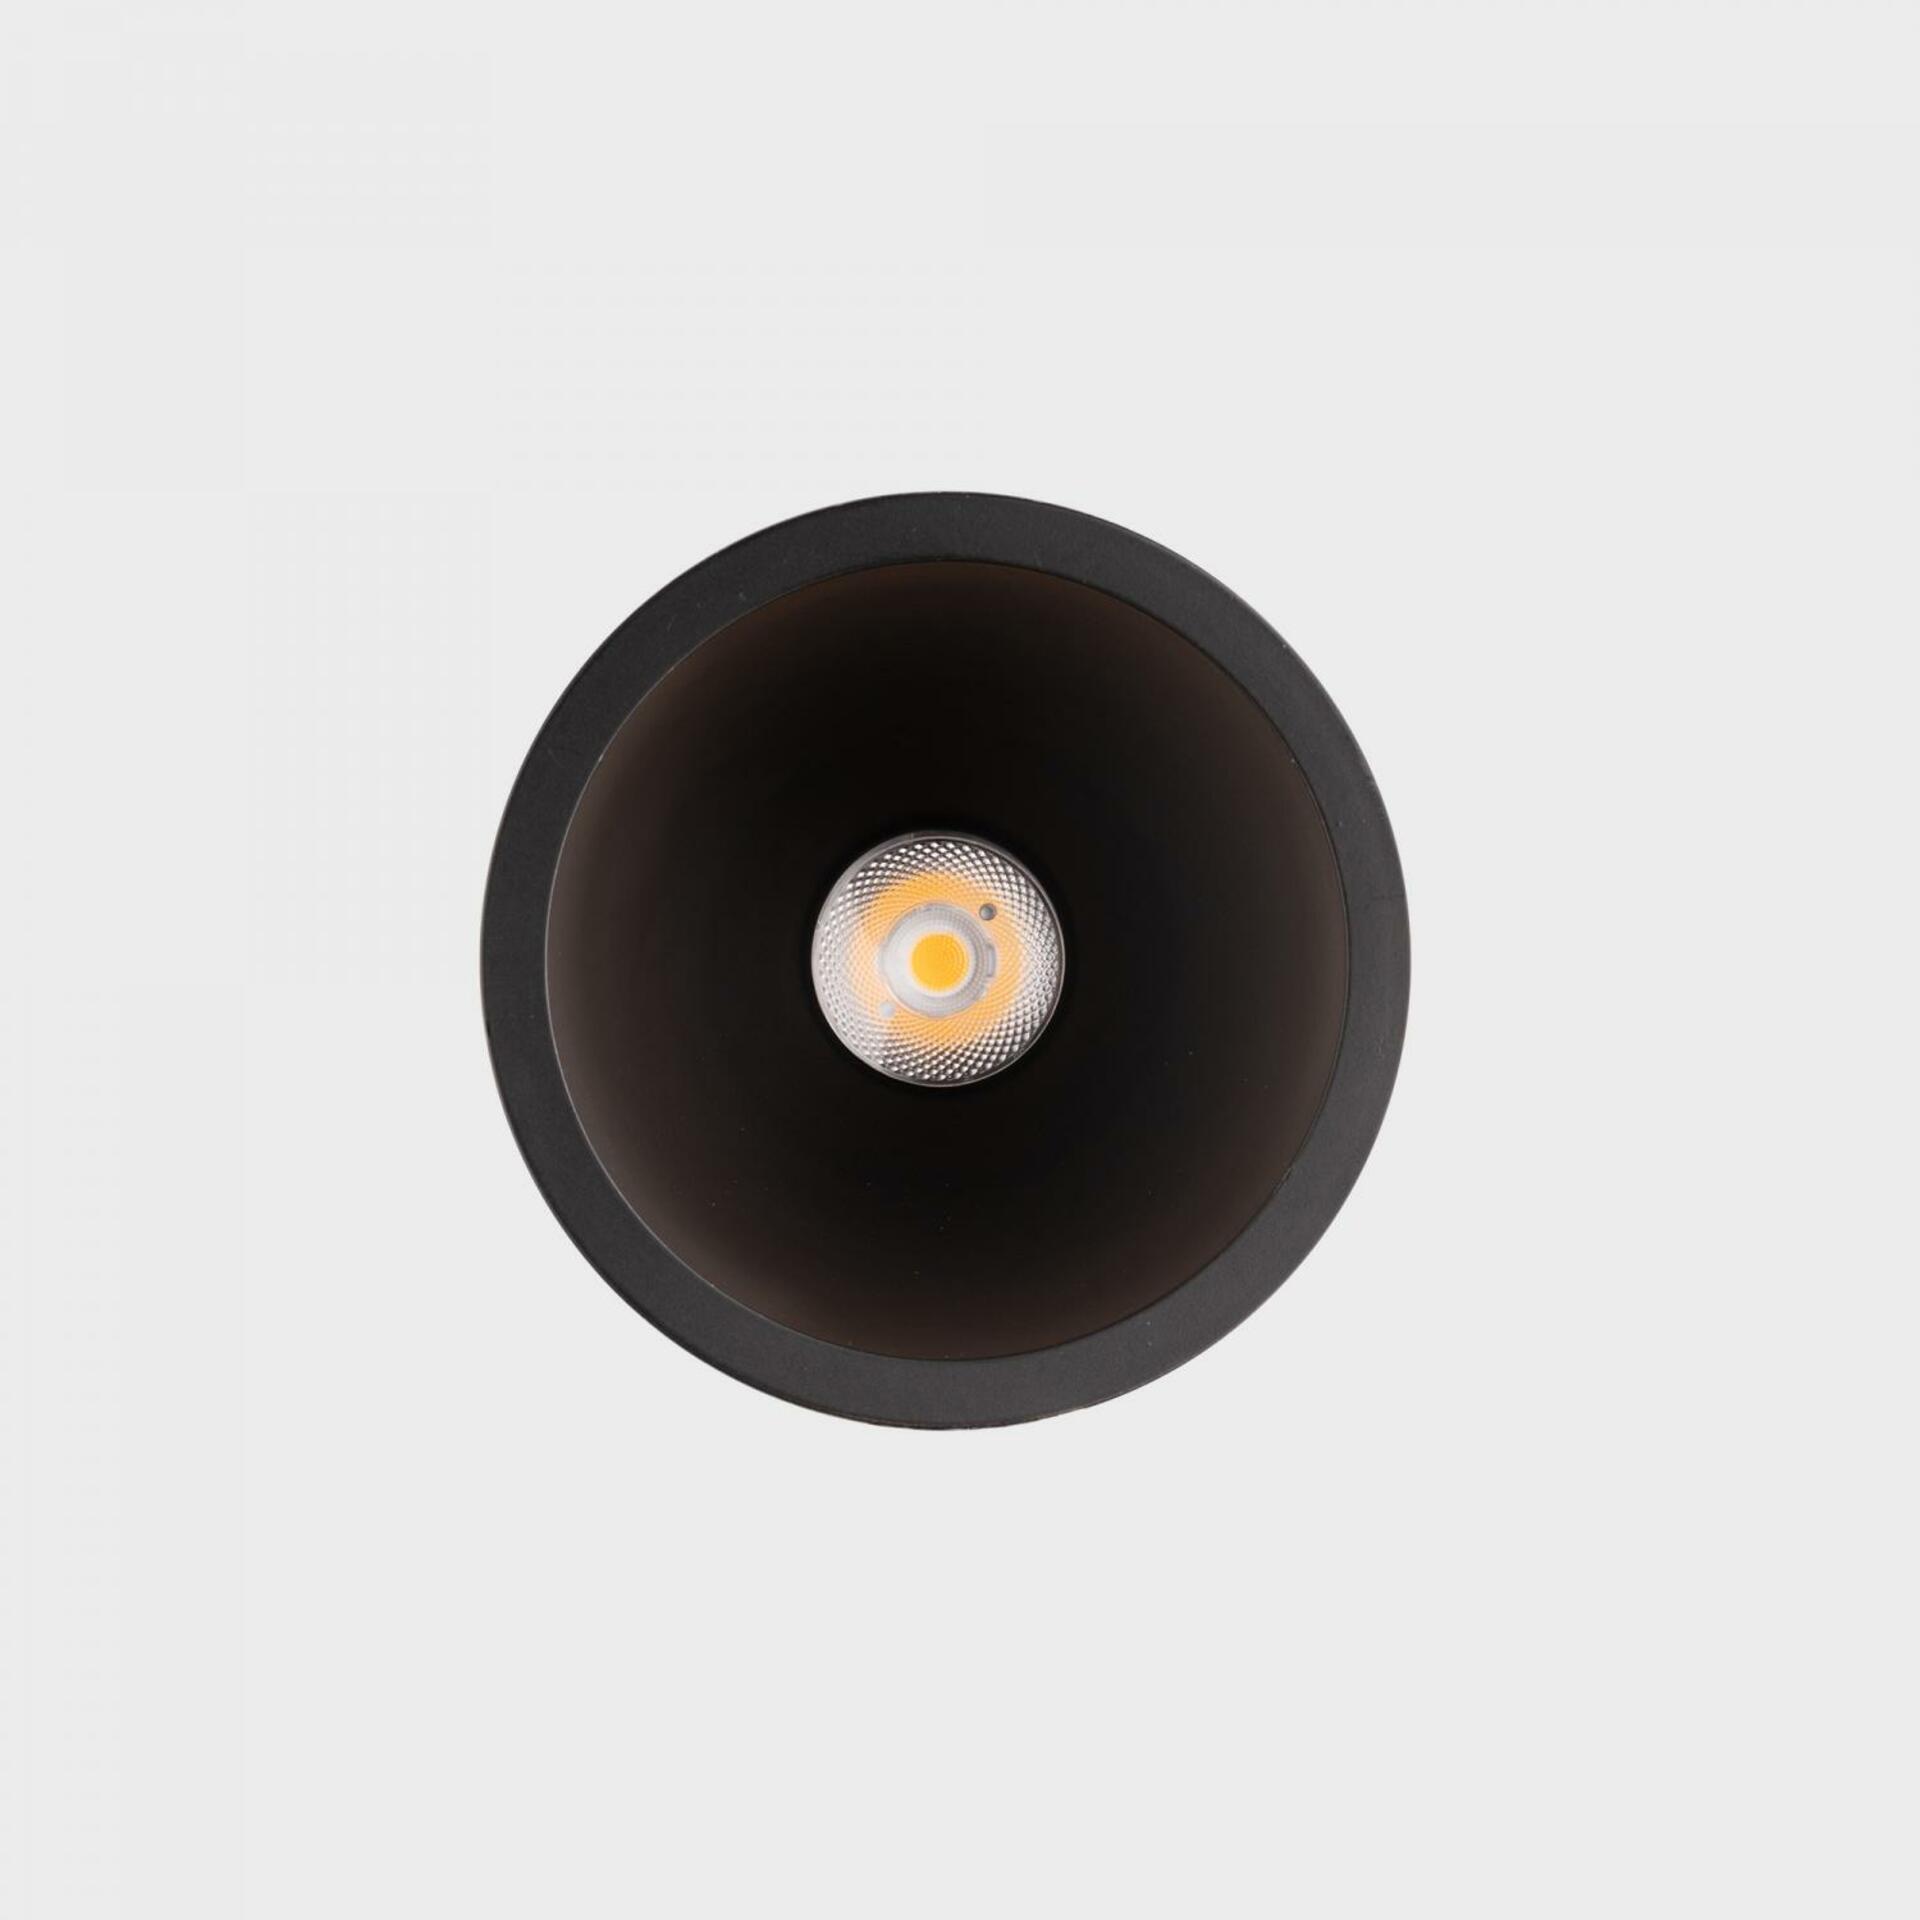 KOHL LIGHTING KOHL-Lighting NOON zapuštěné svítidlo s rámečkem pr.83 mm černá 38° 7 W  CRI 80 2700K 1.10V